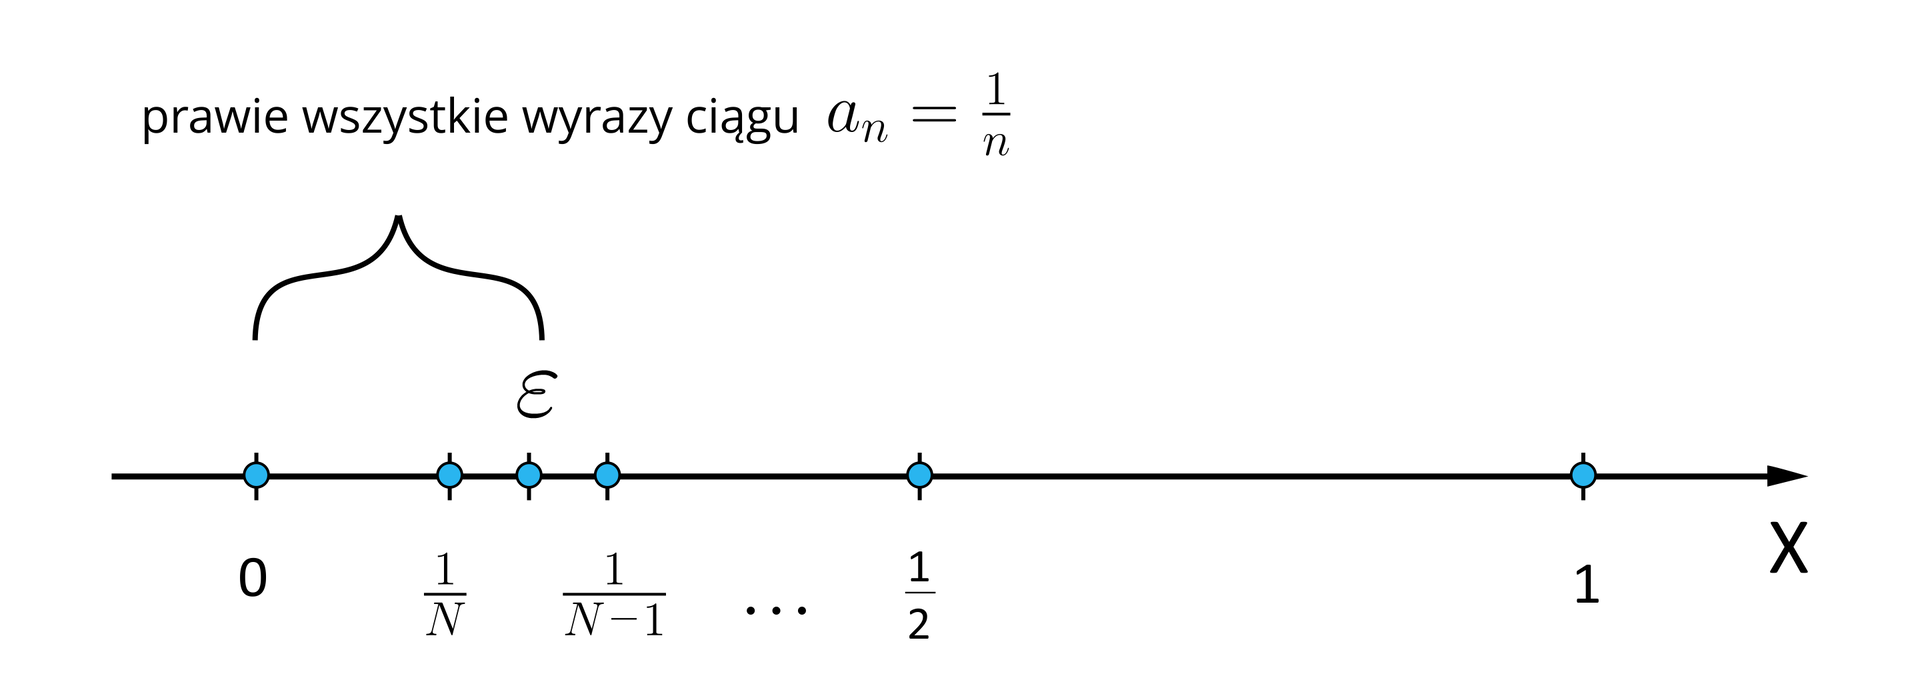 Ilustracja przedstawia poziomą oś X od zera do jeden. Na osi zaznaczono zamalowanymi punktami następujące liczby: 0, 1N, 1N-1, 12, 1. Pomiędzy liczbami 1N i 1N-1 oznaczono na osi również epsilon. Nad osią poziomą klamrą objęto fragment osi od zera do epsilon i podpisano następująco: "prawie wszystkie wyrazy ciągu an=1n.